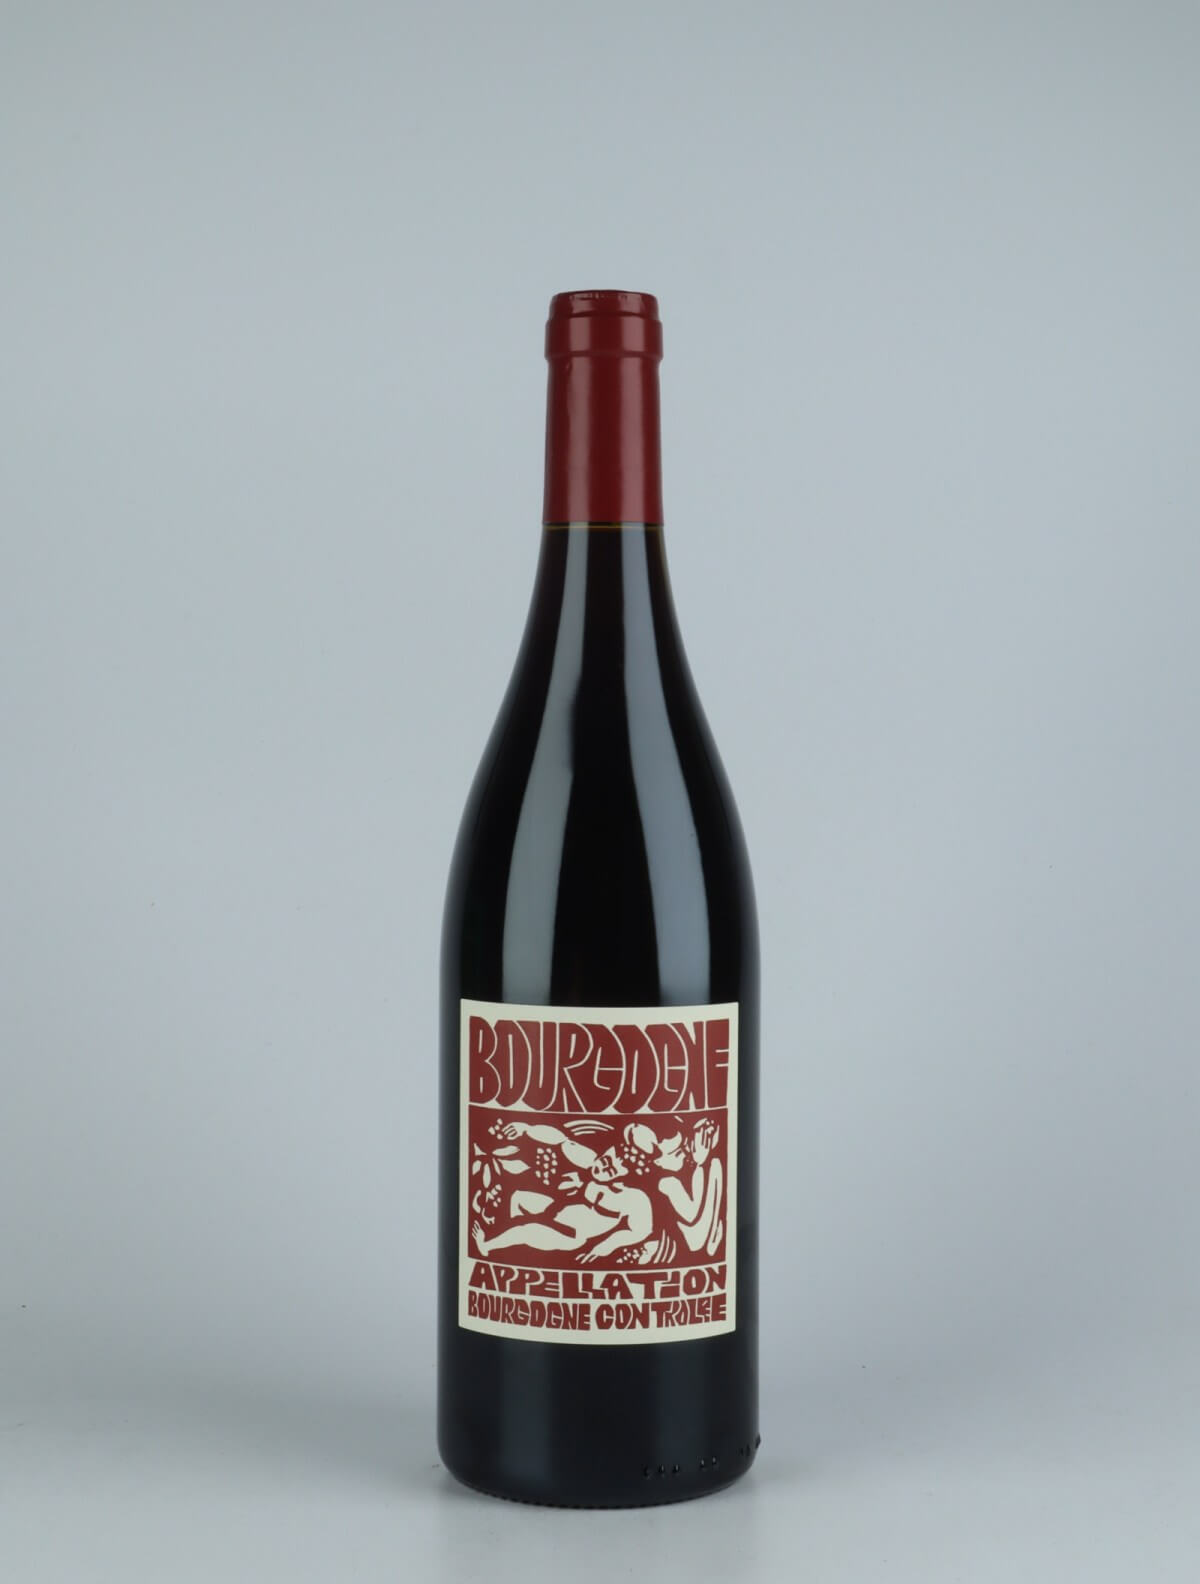 A bottle 2020 Bourgogne Rouge Red wine from La Sœur Cadette, Burgundy in France